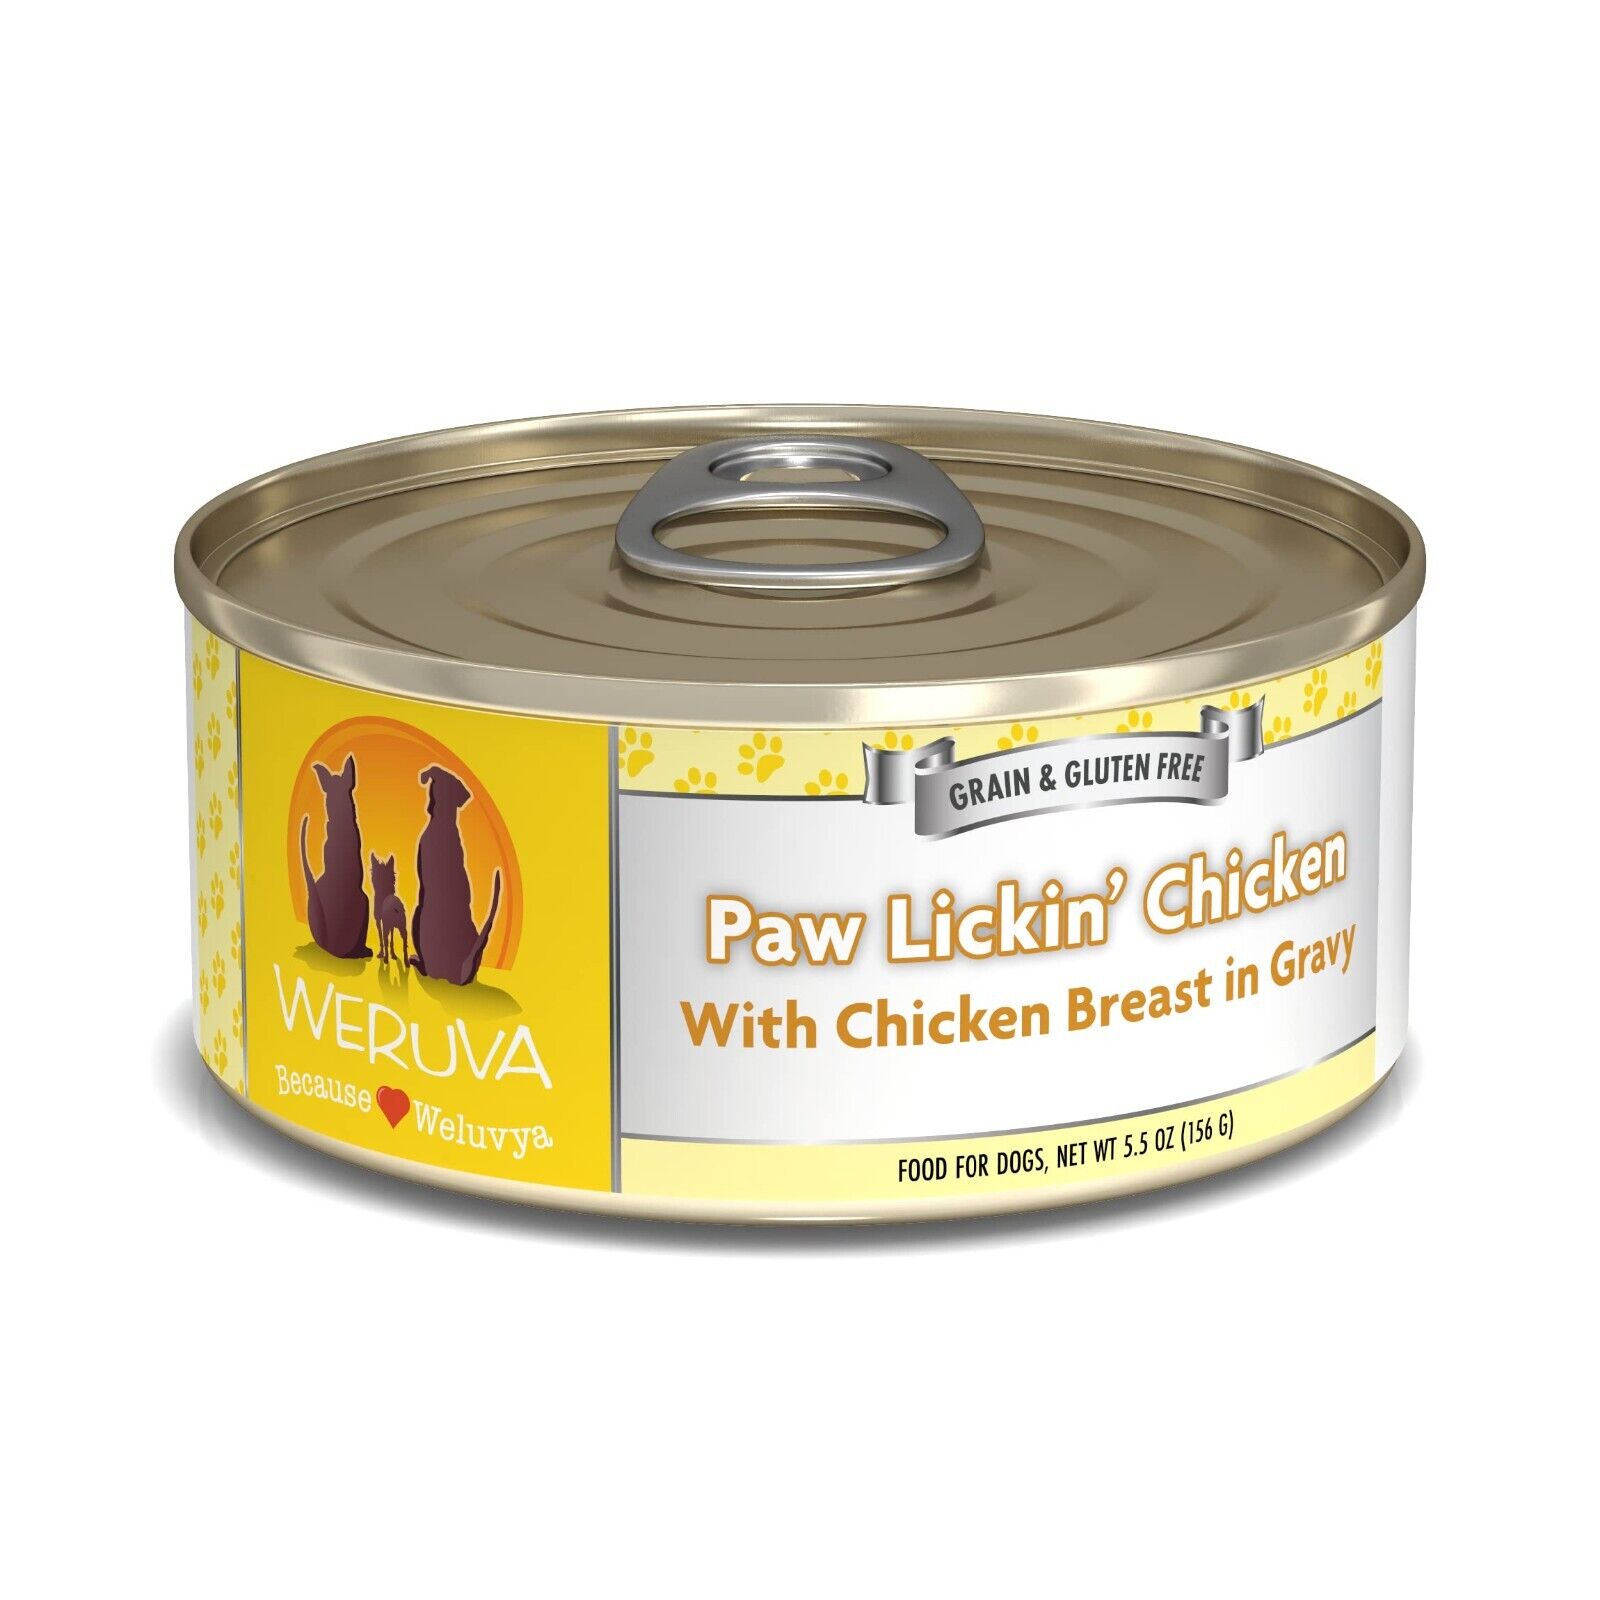 Weruva Classic Dog Food, Paw Lickin’ Chicken with Chicken Breast in Gravy, 5.5oz